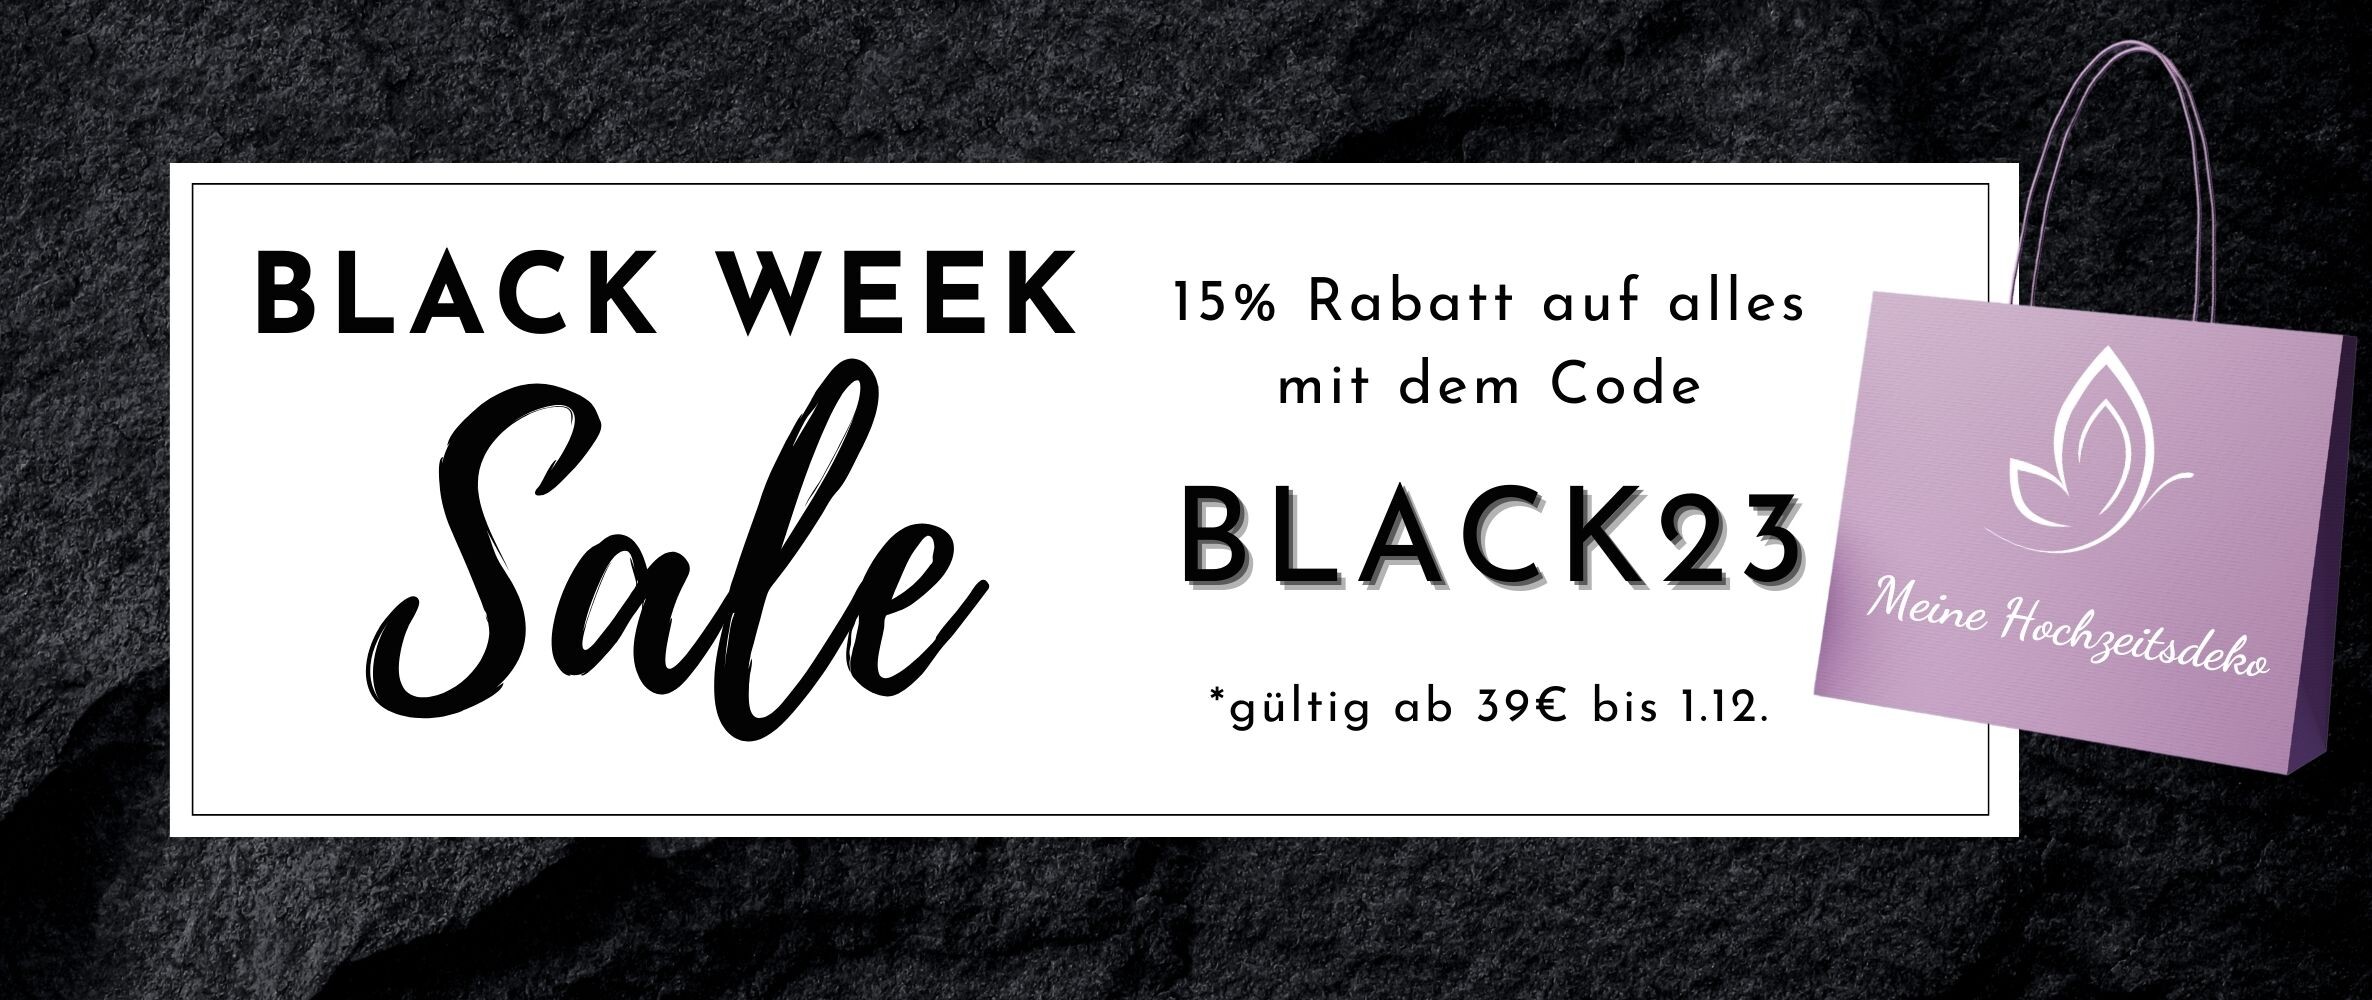 Black Week Sale bei Meine Hochzeitsdeko | Code: BLACK23 | ab 39€ bis 1.12. gültig